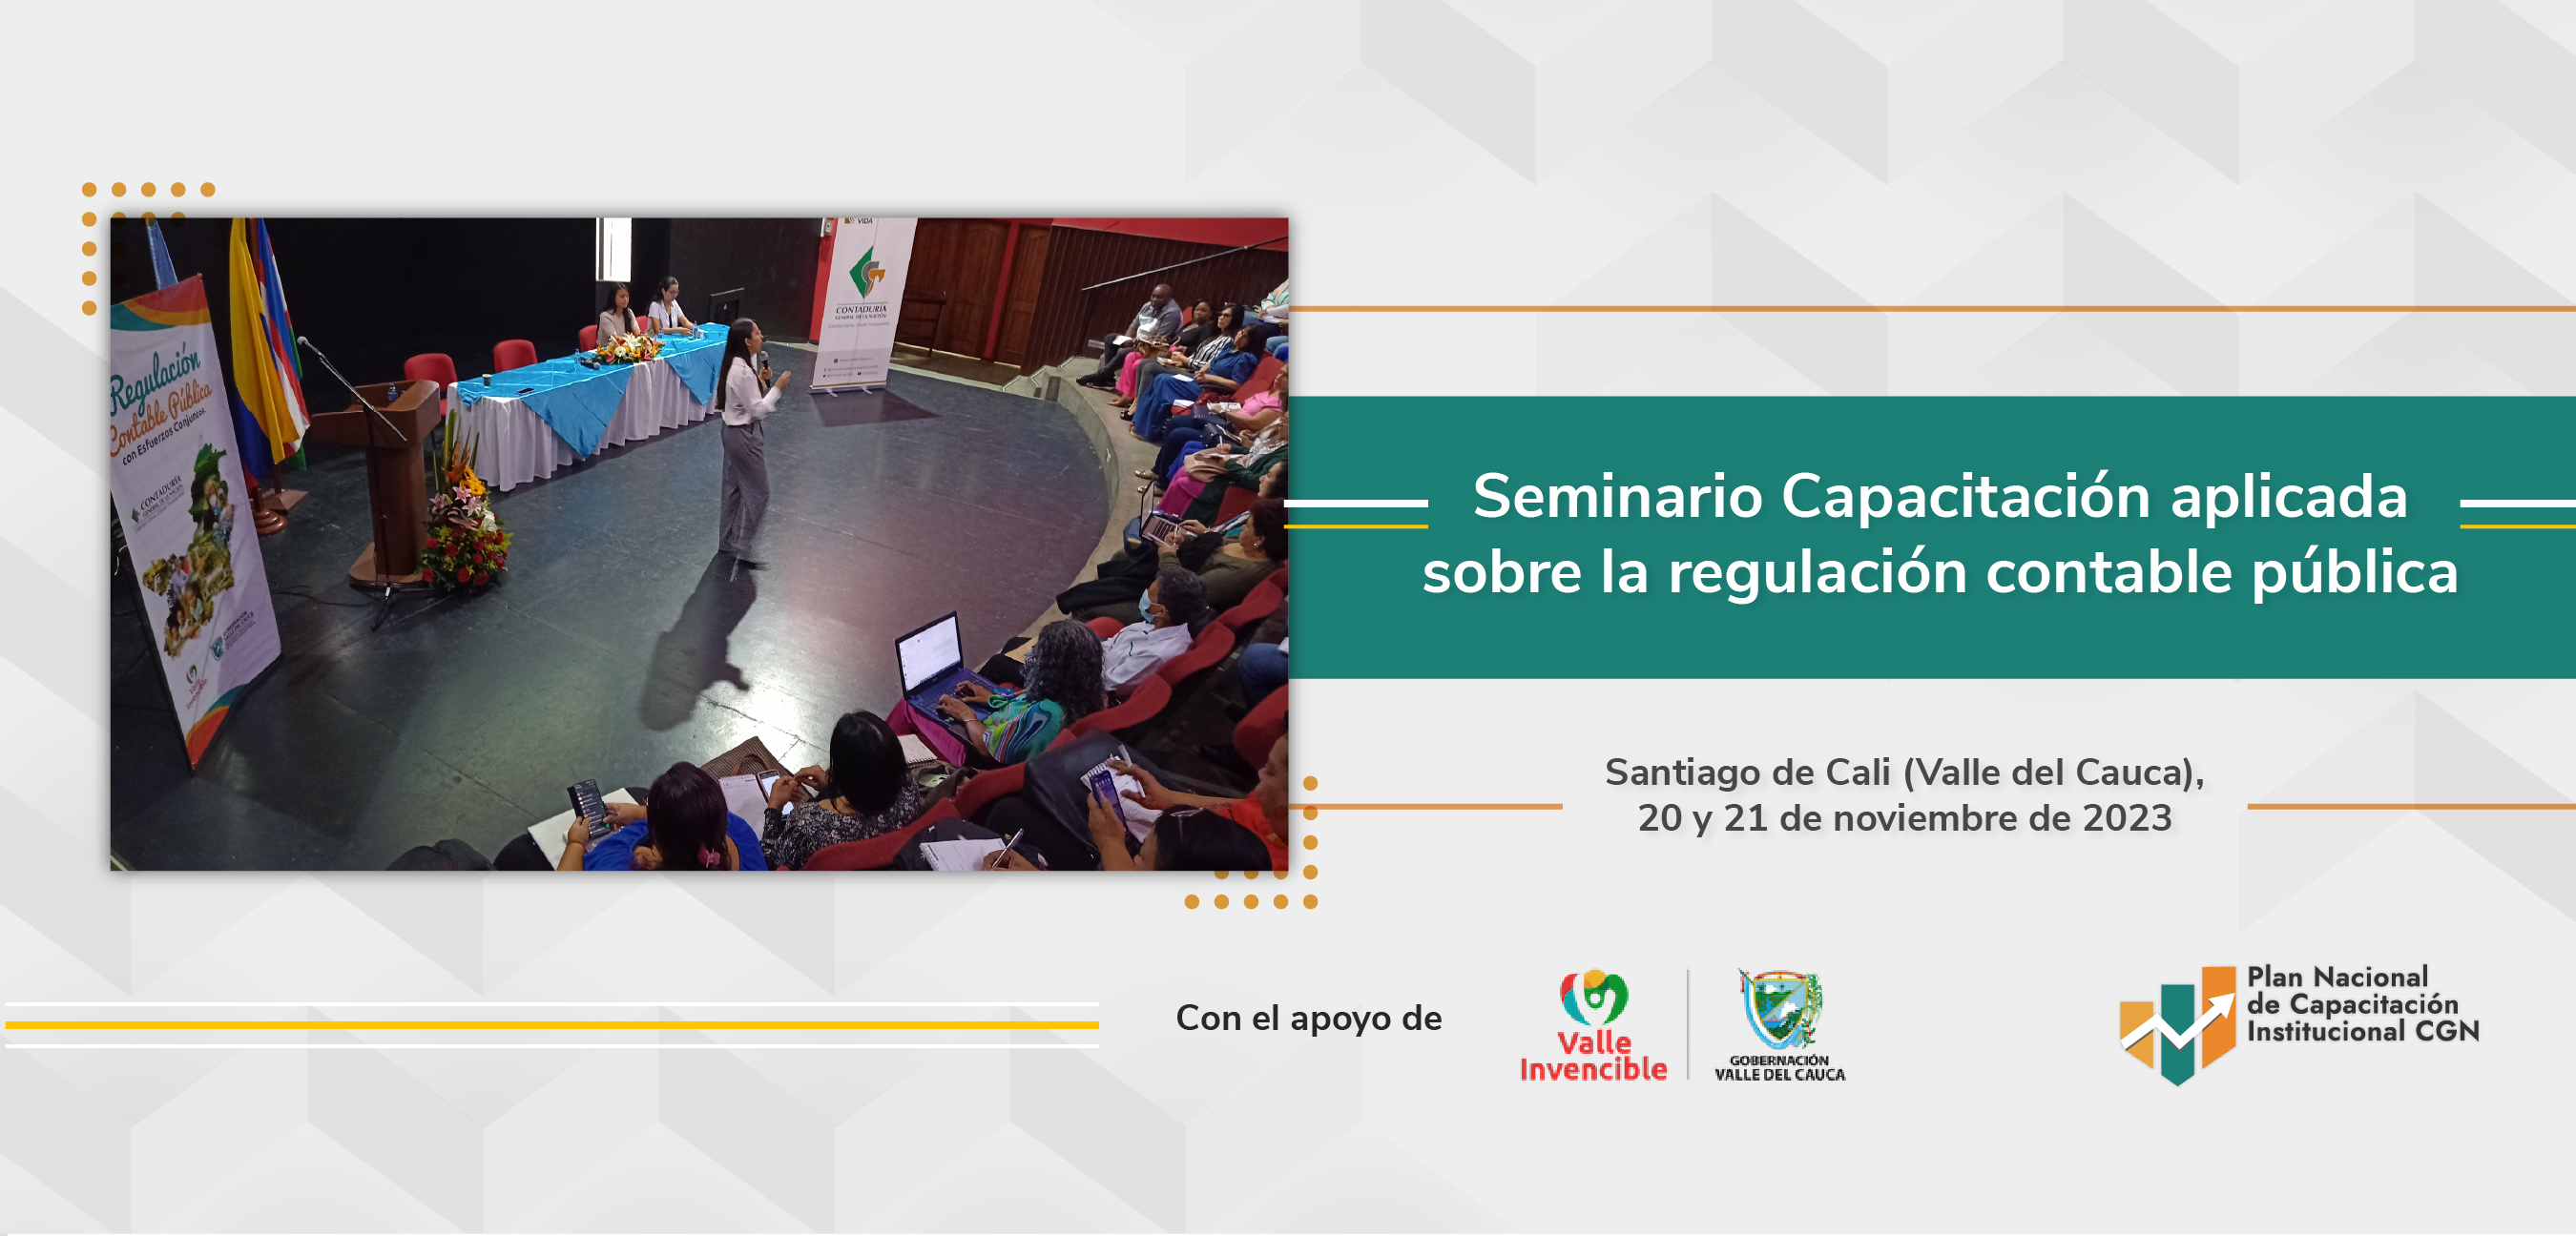 La CGN está en Santiago de Cali (Valle del Cauca) capacitando sobre la regulación contable pública